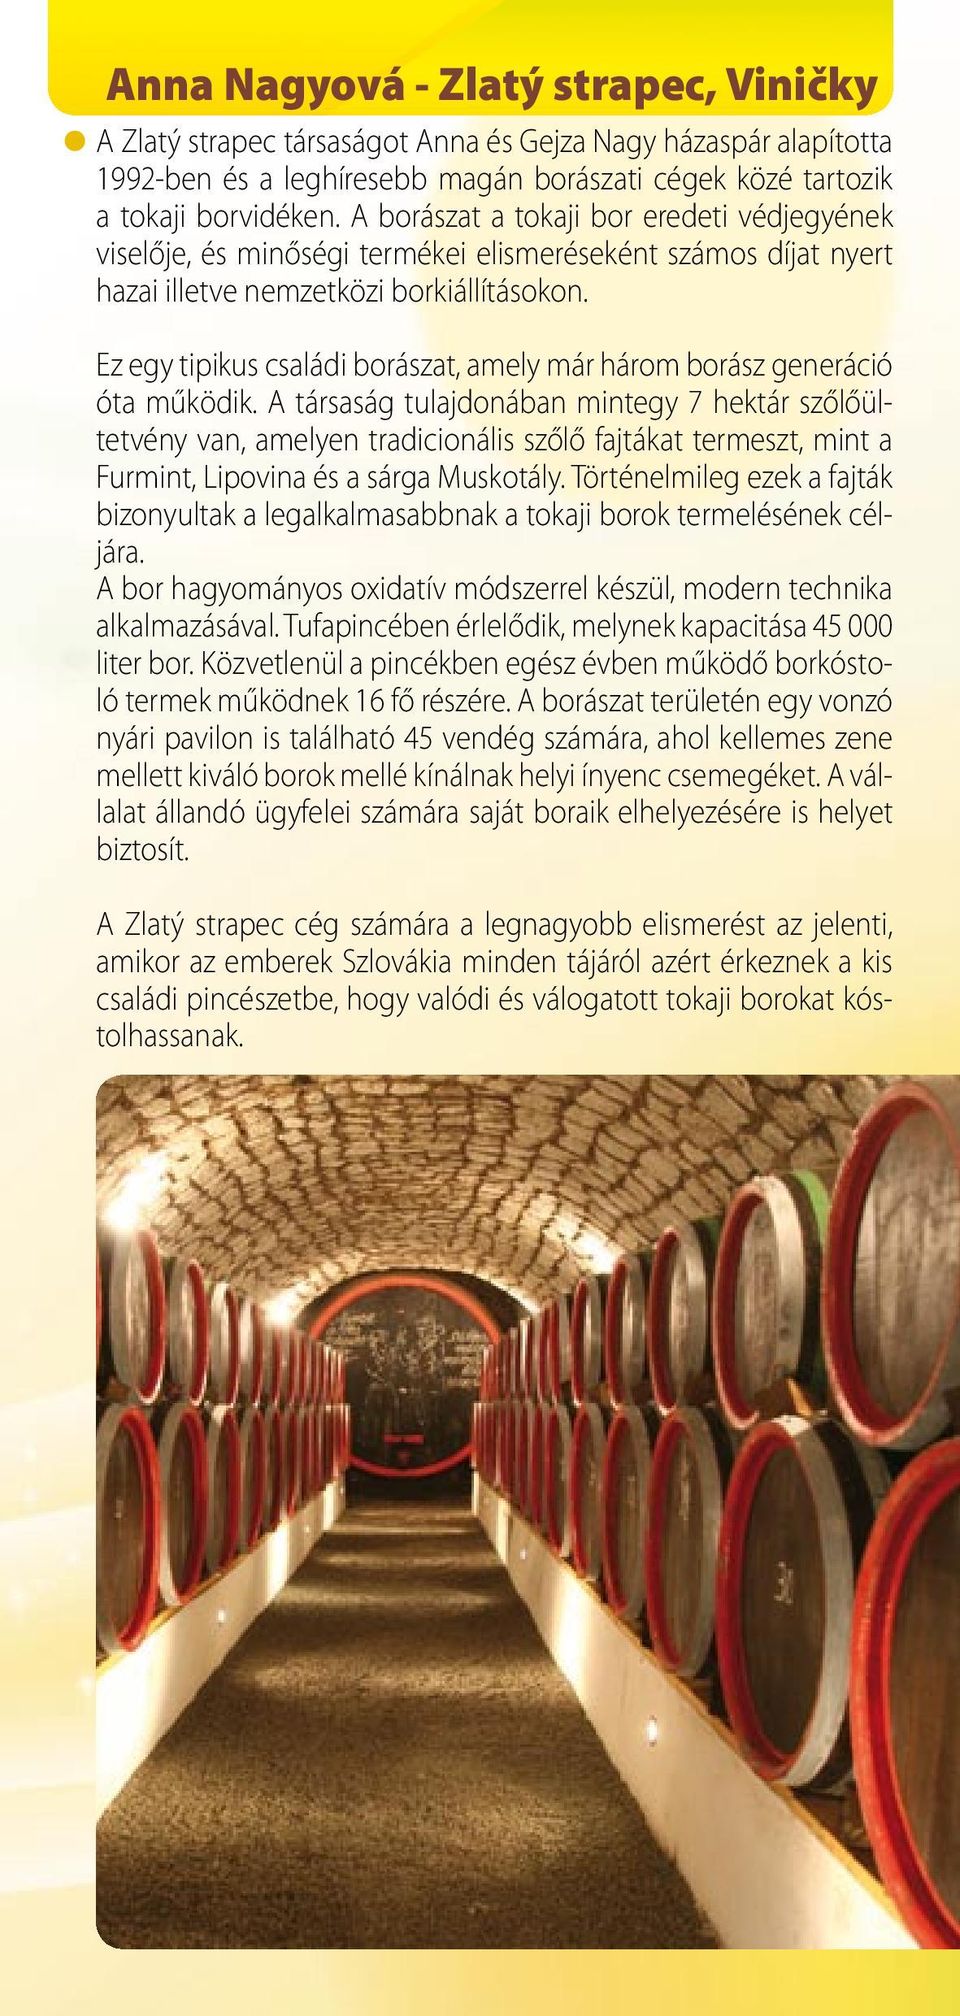 Ez egy tipikus családi borászat, amely már három borász generáció óta működik.